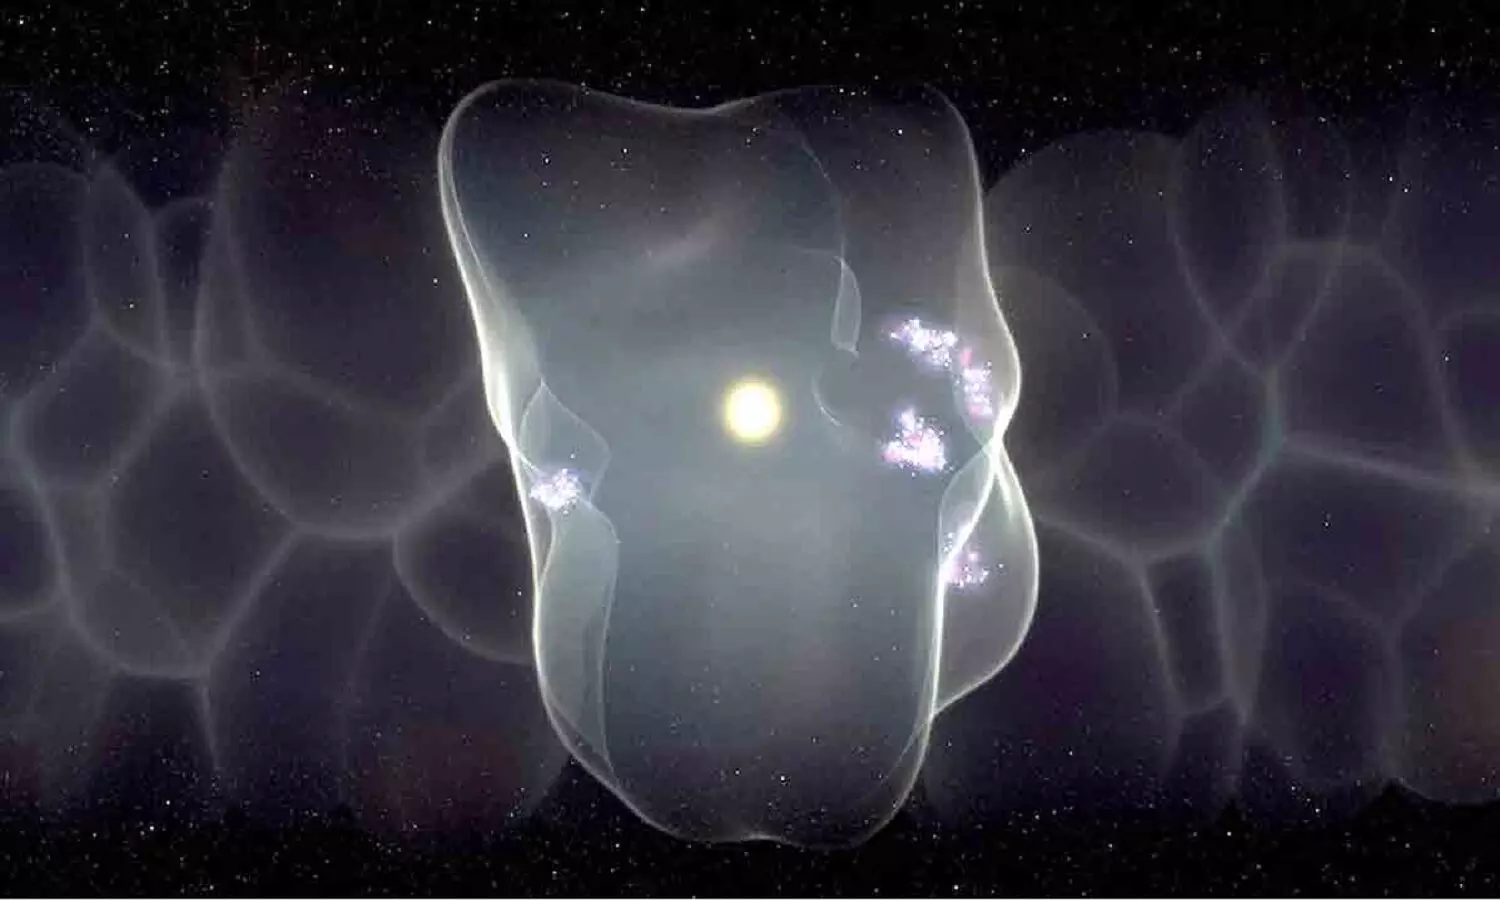 ब्रम्हांड कितना बड़ा है: 1 हज़ार प्रकाश वर्ष बड़े बुलबुले के अंदर अंतरिक्ष में फंसी है पृथ्वी